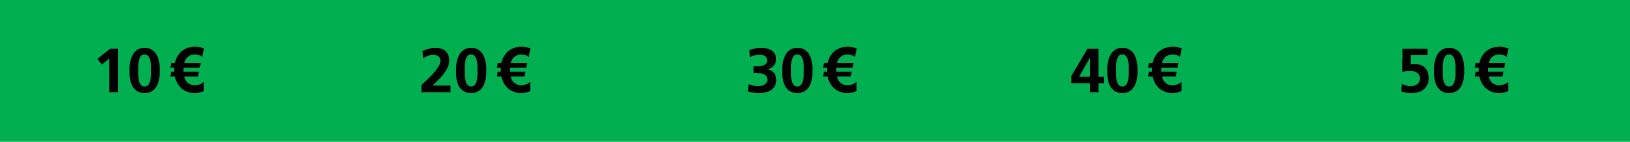 50er-50_Euro.jpg